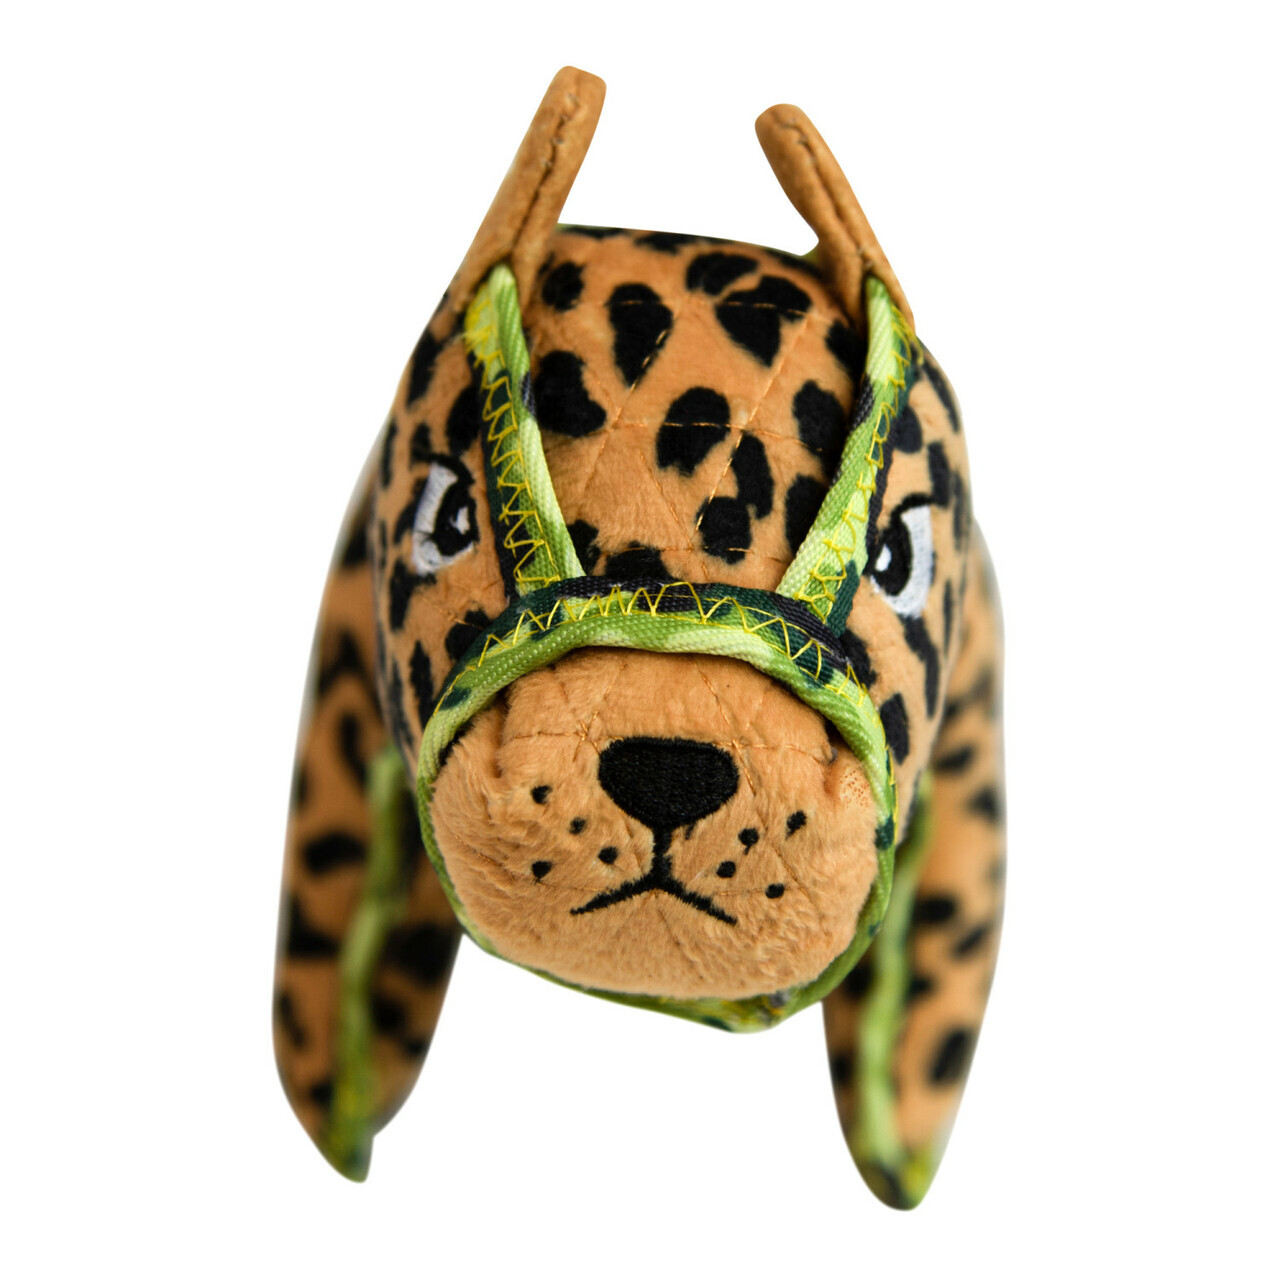 Outward Hound Xtreme Seamz Squeaker Dog Toy - Leopard image 4